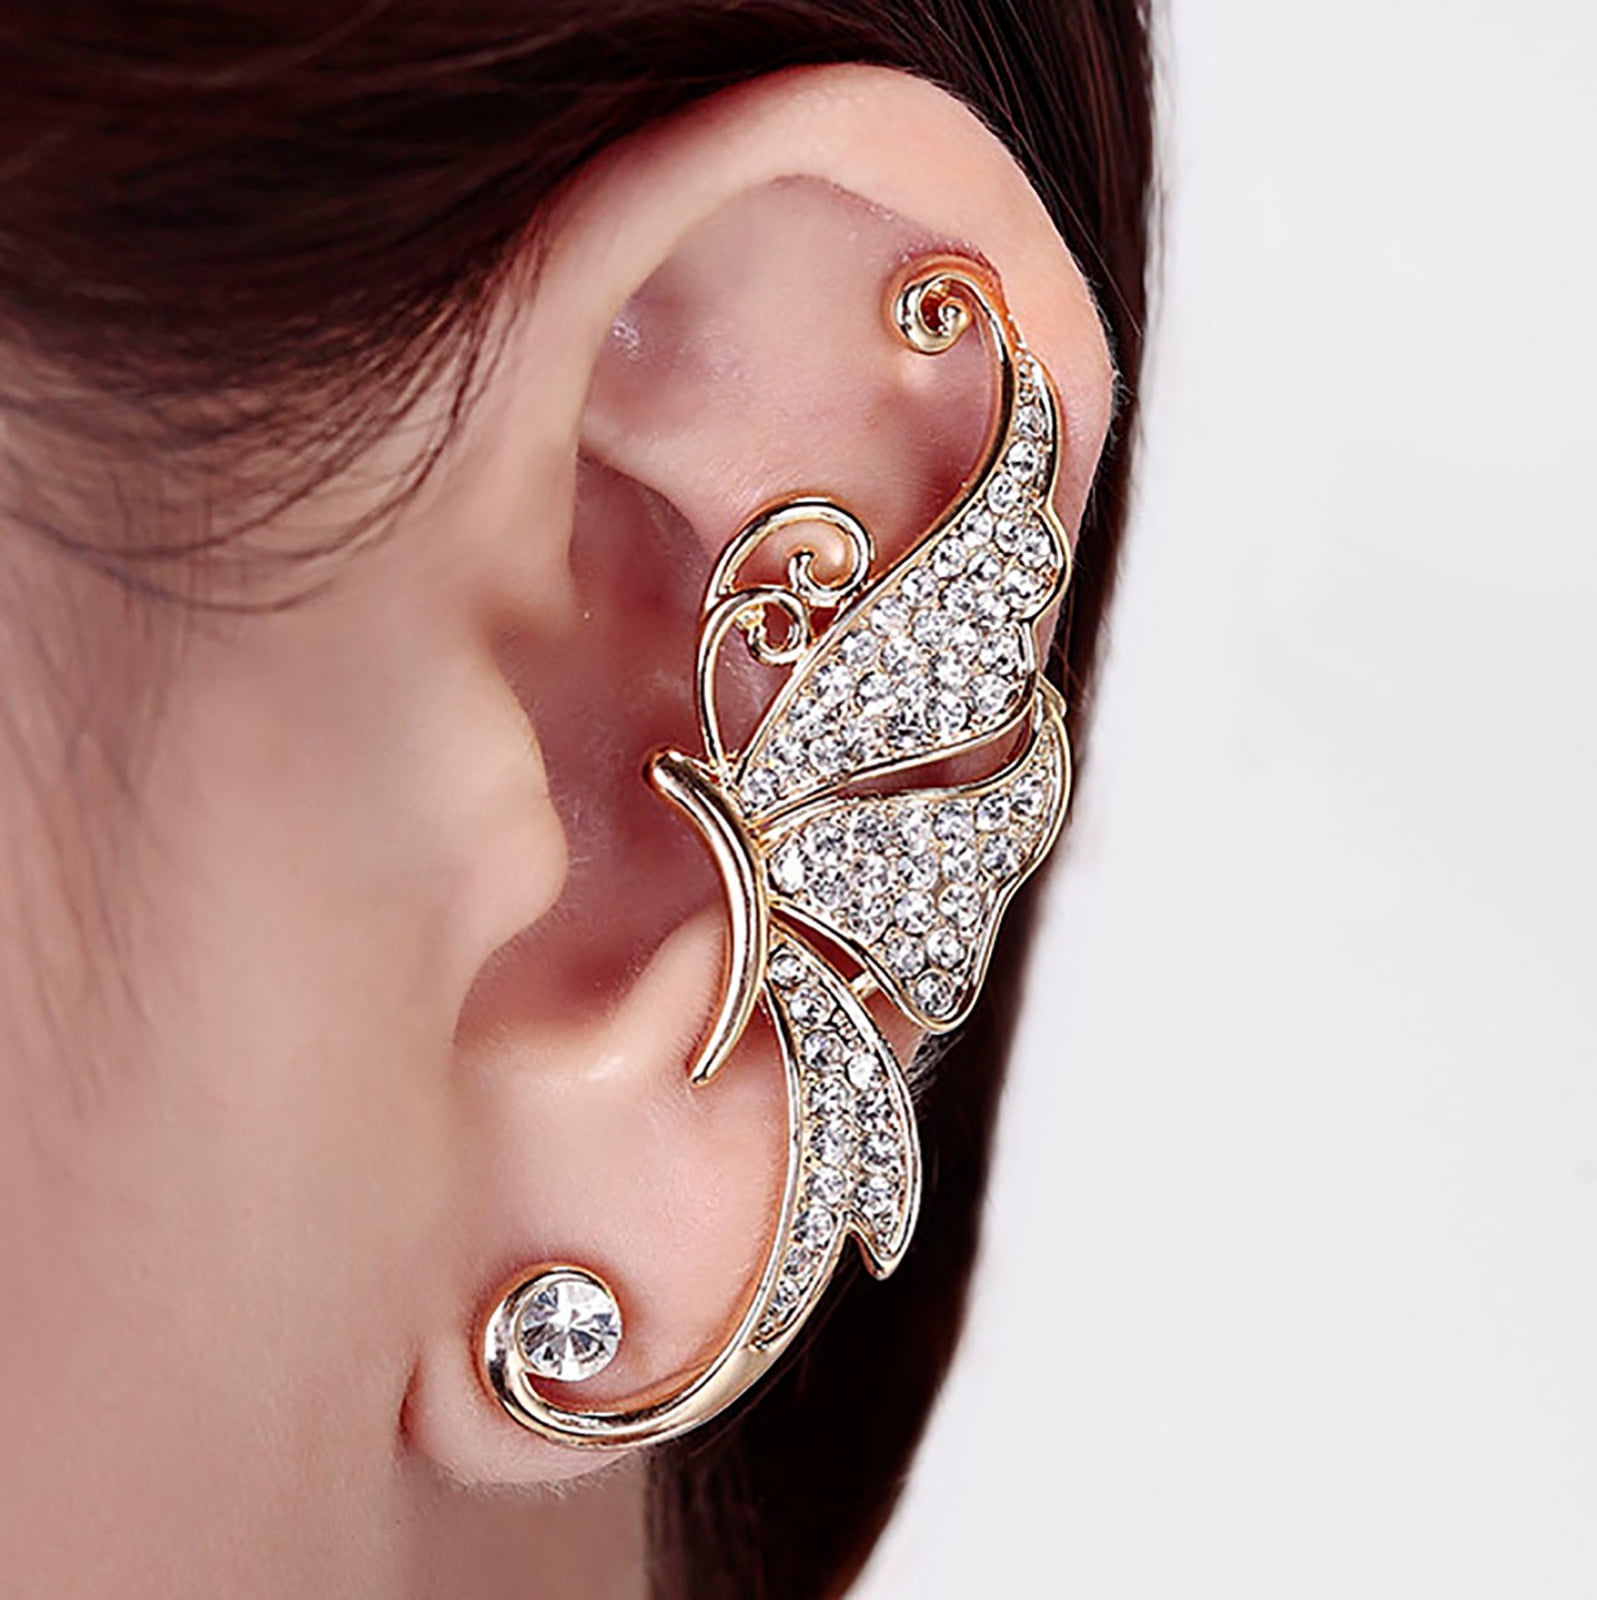 Midsumdr Earrings For Women Diamond Butterfly Ear Clips Female Jewelry Silver Gold Hoop Stud 8201cfeb ffc5 4f55 af8f 7fe0fc6ebdbf.832215a560d1e613f9371470b44f2e17